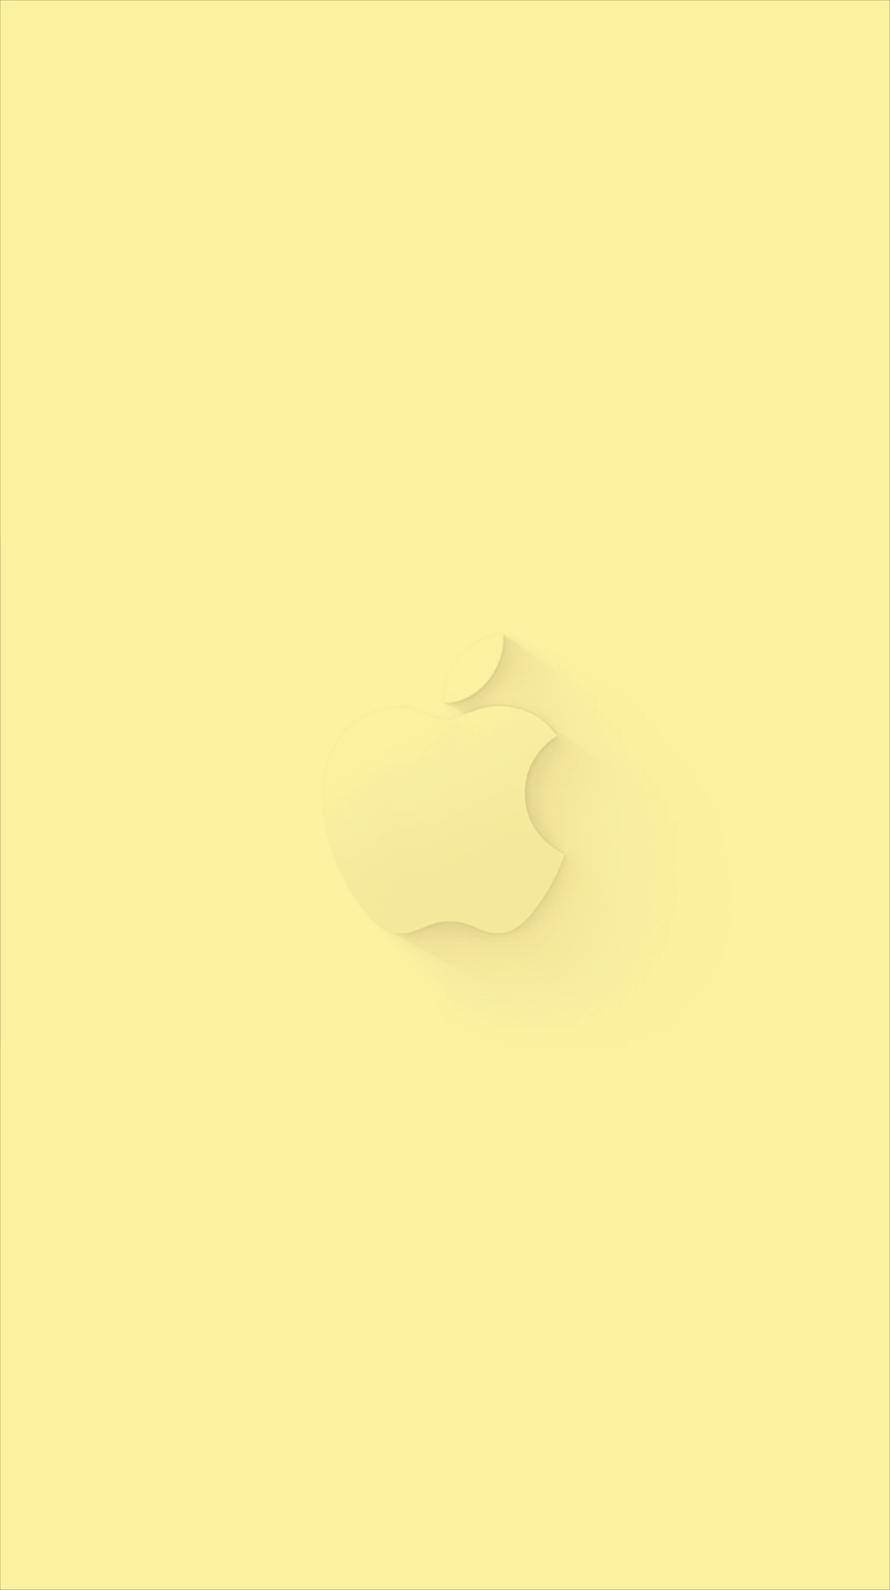 薄黄色 アップルマーク Iphone6壁紙 Wallpaperbox